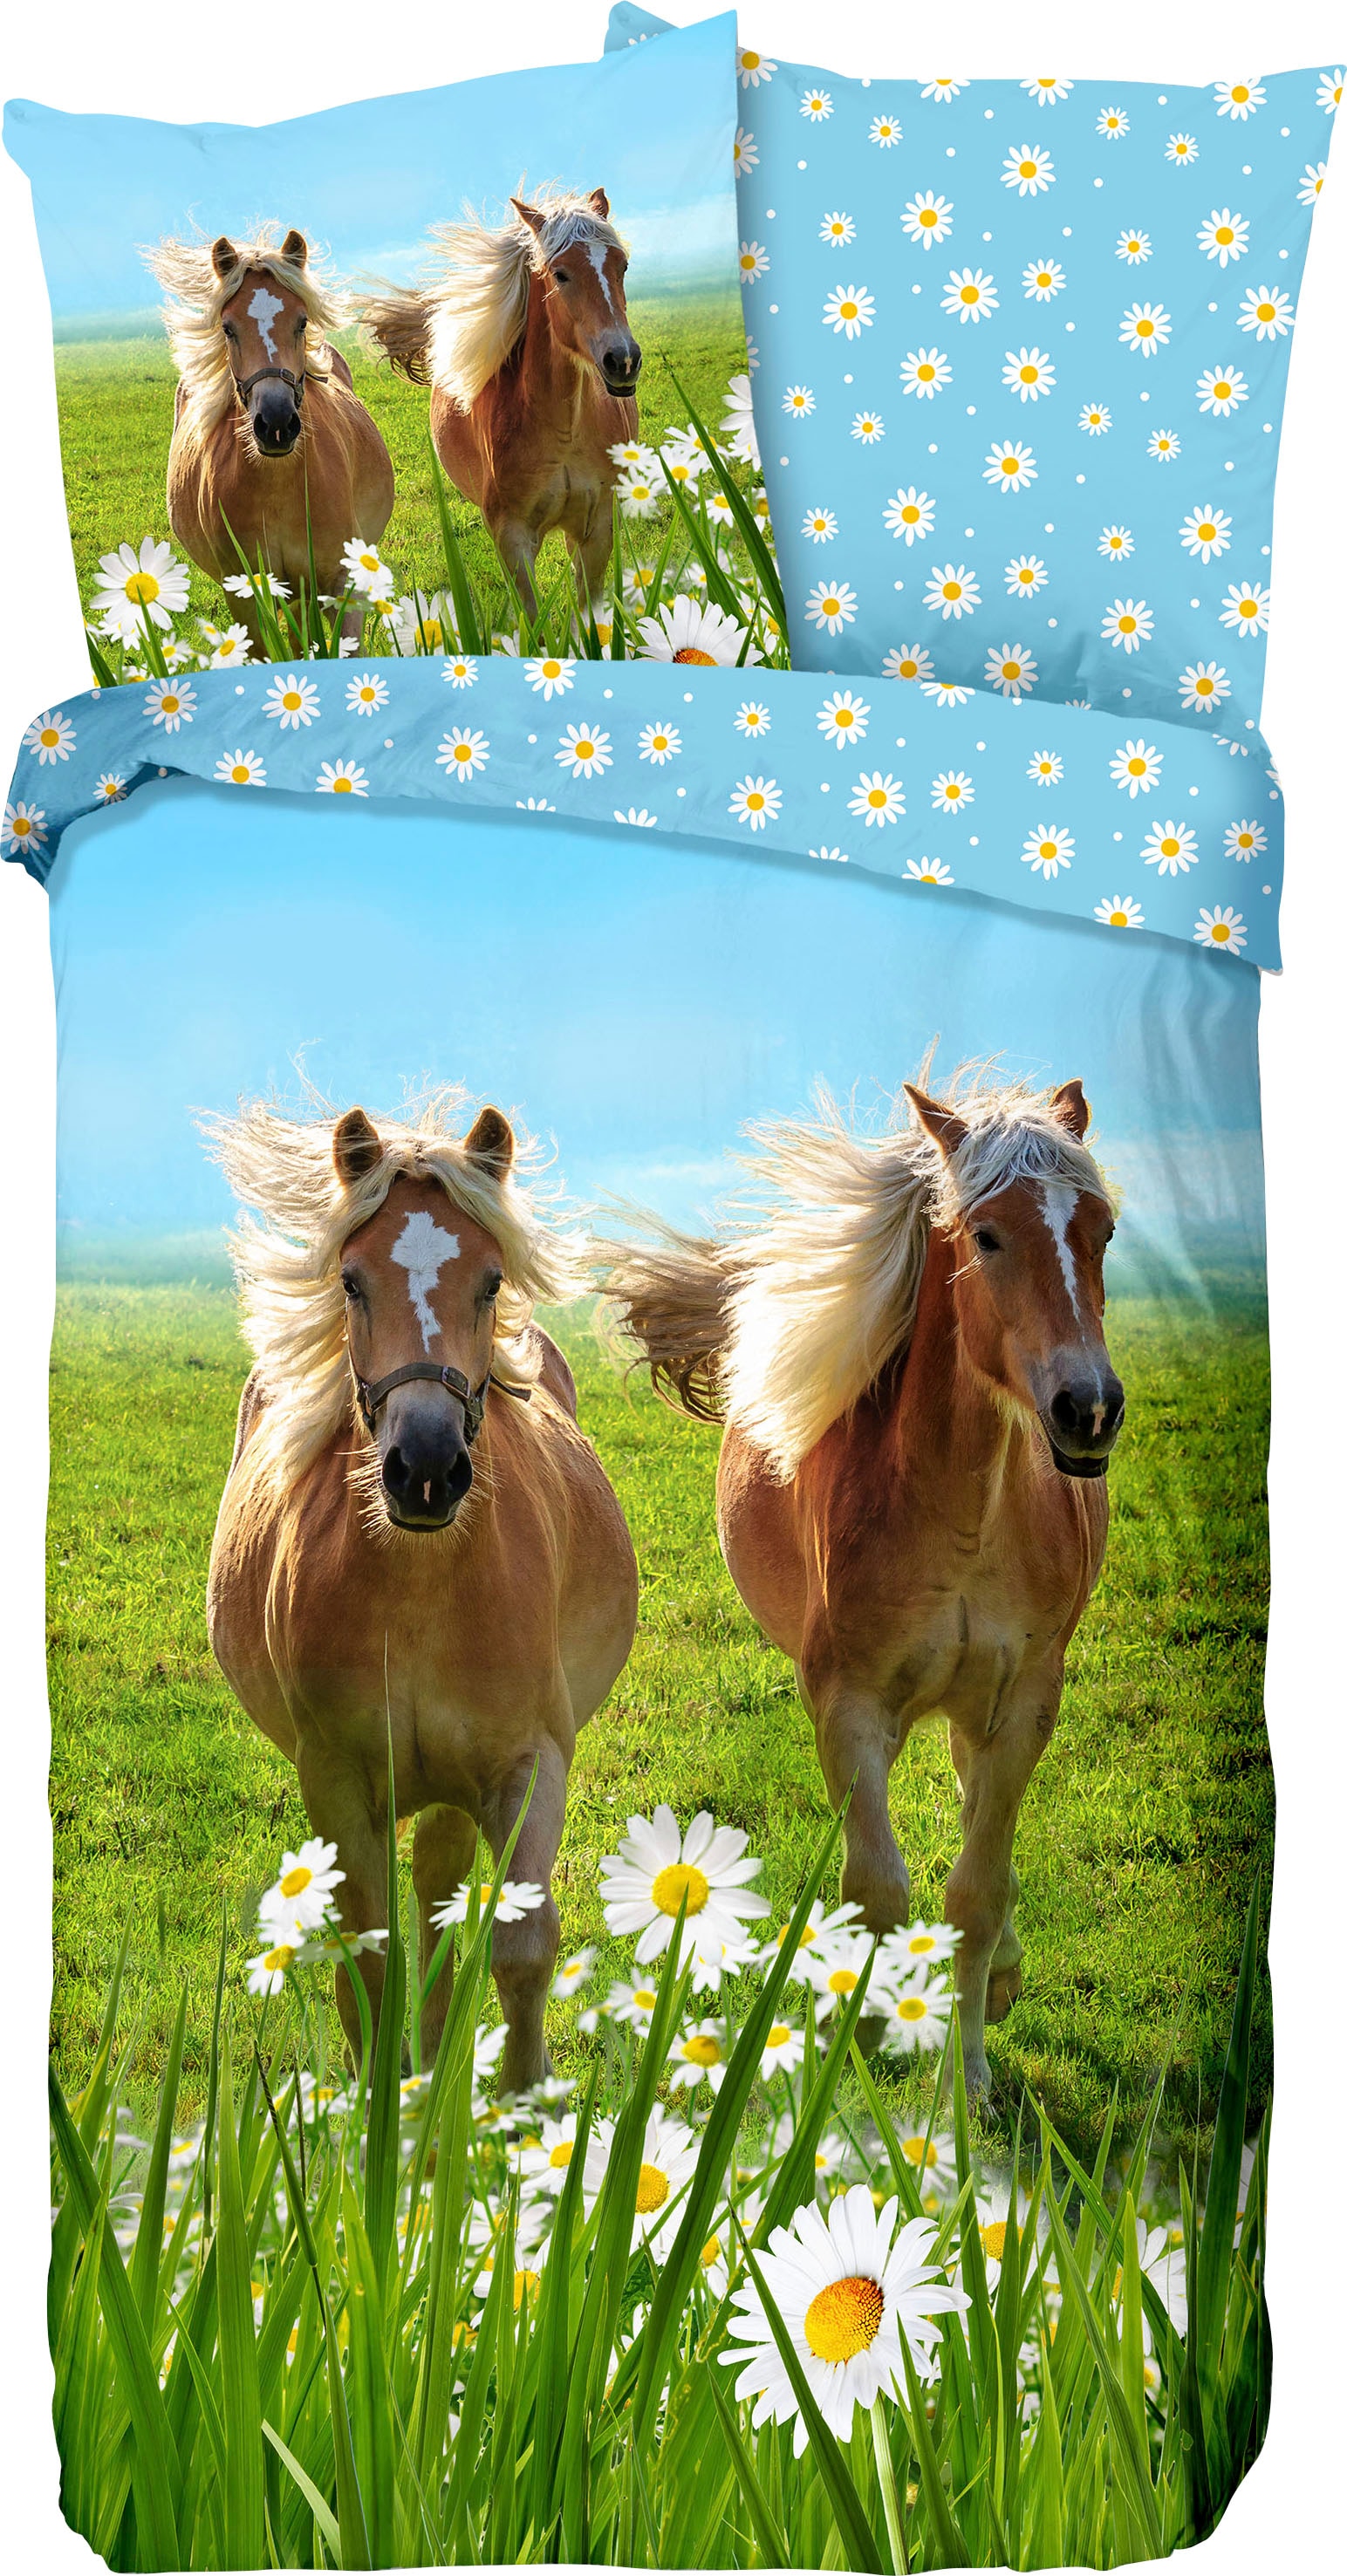 Kinderbettwäsche »Horses«, (2 tlg.), mit Pferden